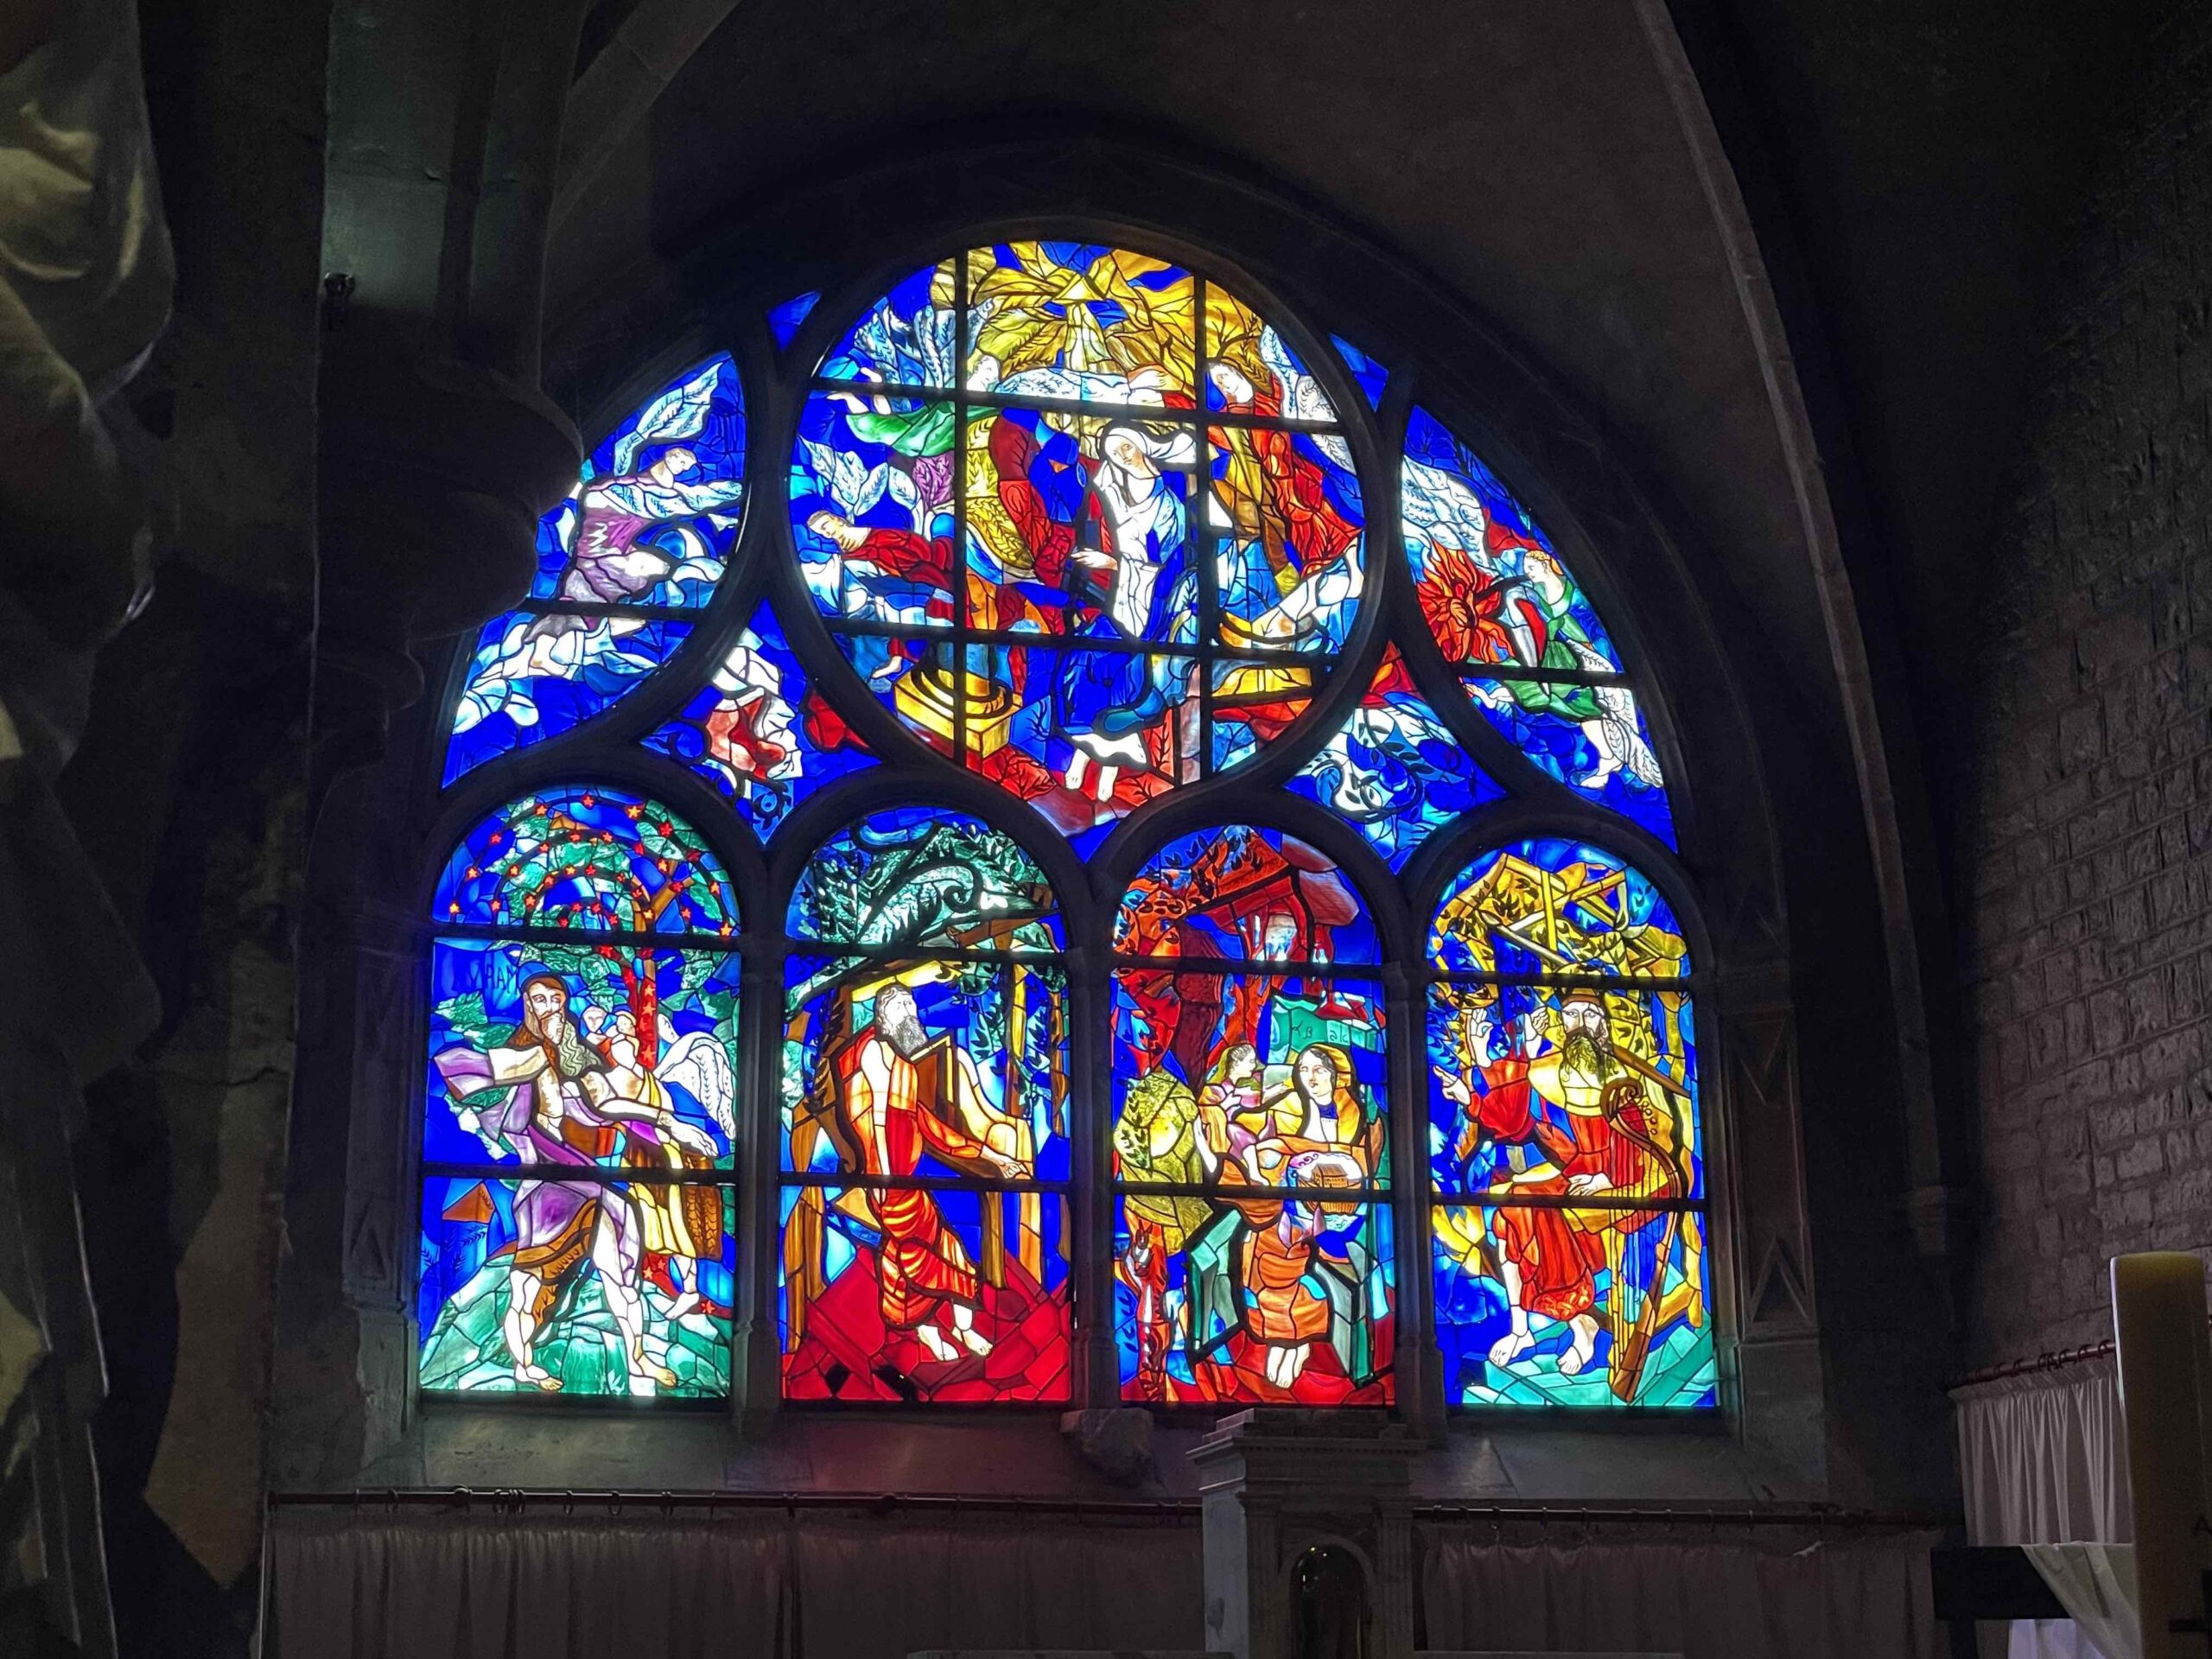  Flâneries dijonnaises- 1ère partie/aufildeslieux.fr/ Un vitrail de l'Église Notre-Dame-de-Talant © K.HIBBS